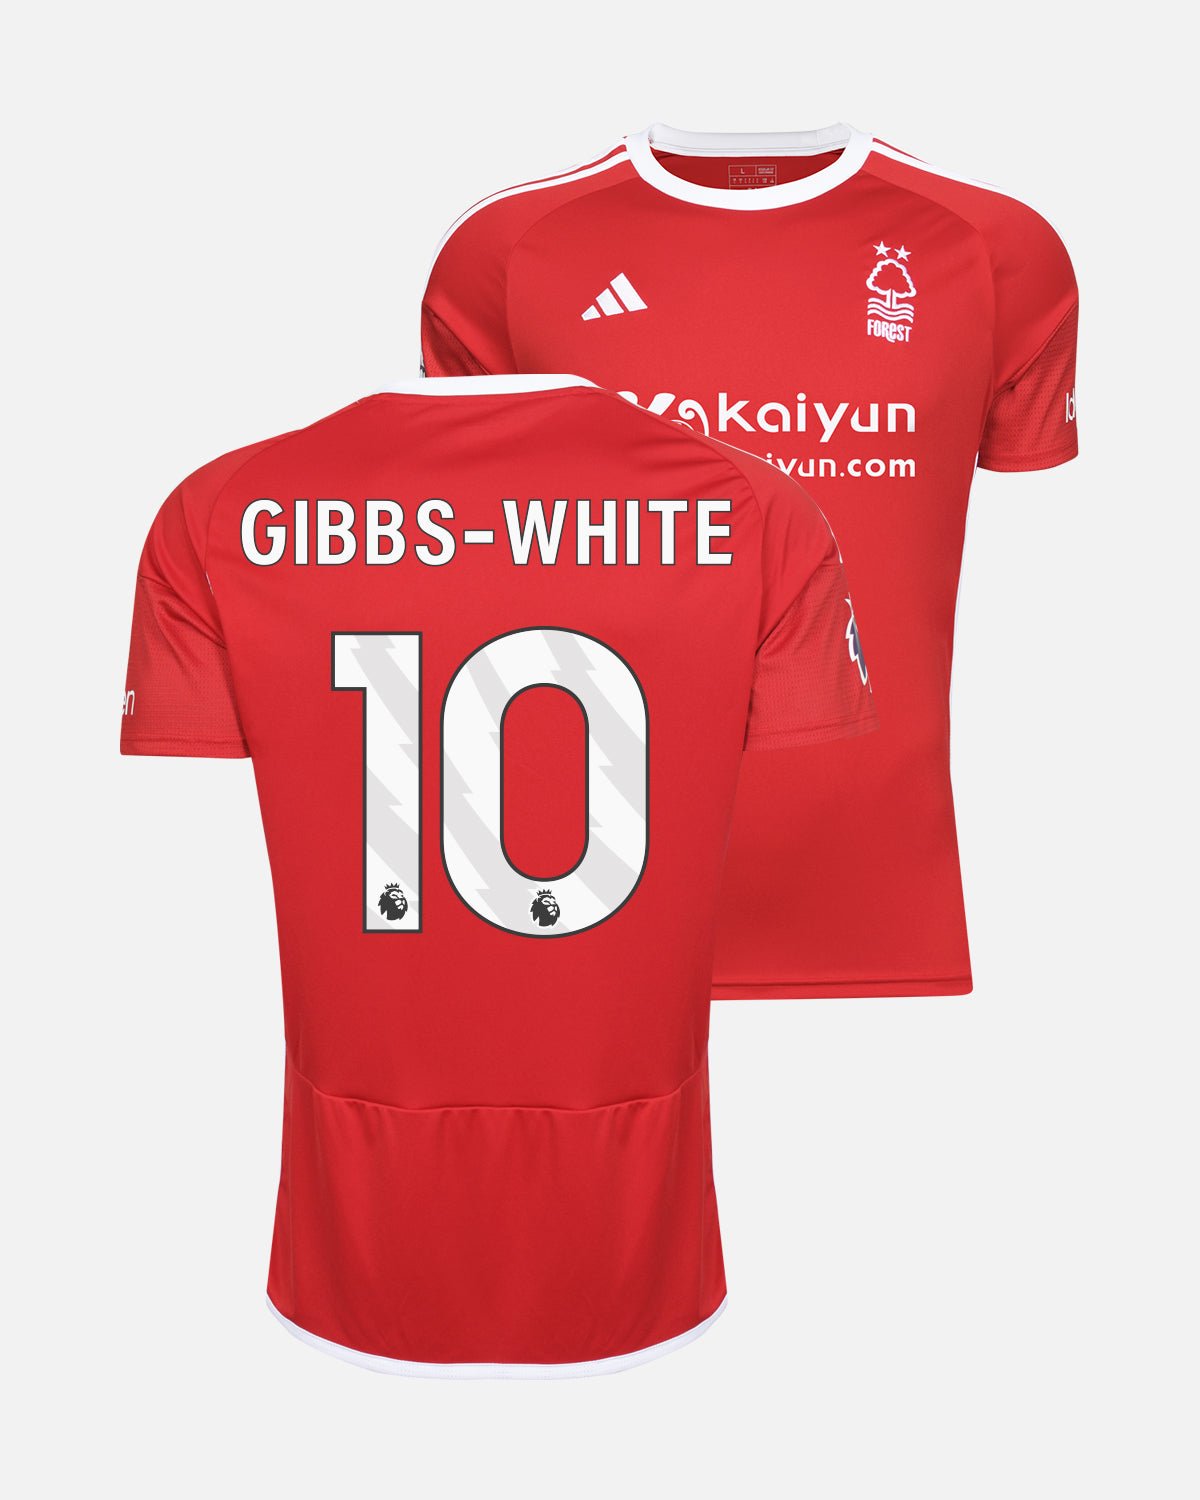 NFFC Home Shirt 23-24 - Gibbs-White 10 - Nottingham Forest FC